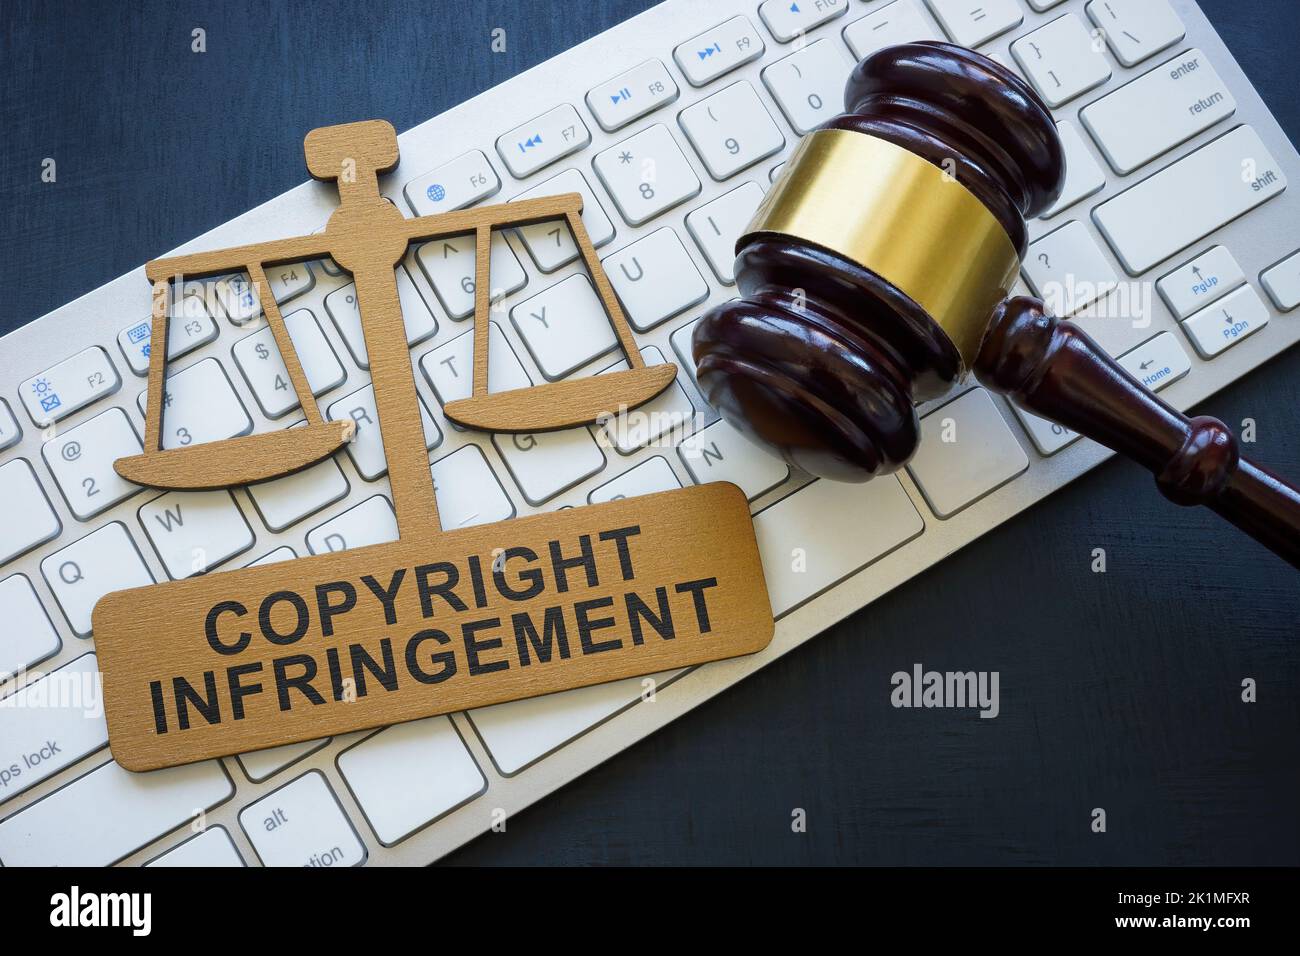 Frase de infracción de derechos de autor en la placa, el teclado y el ombligo. Foto de stock